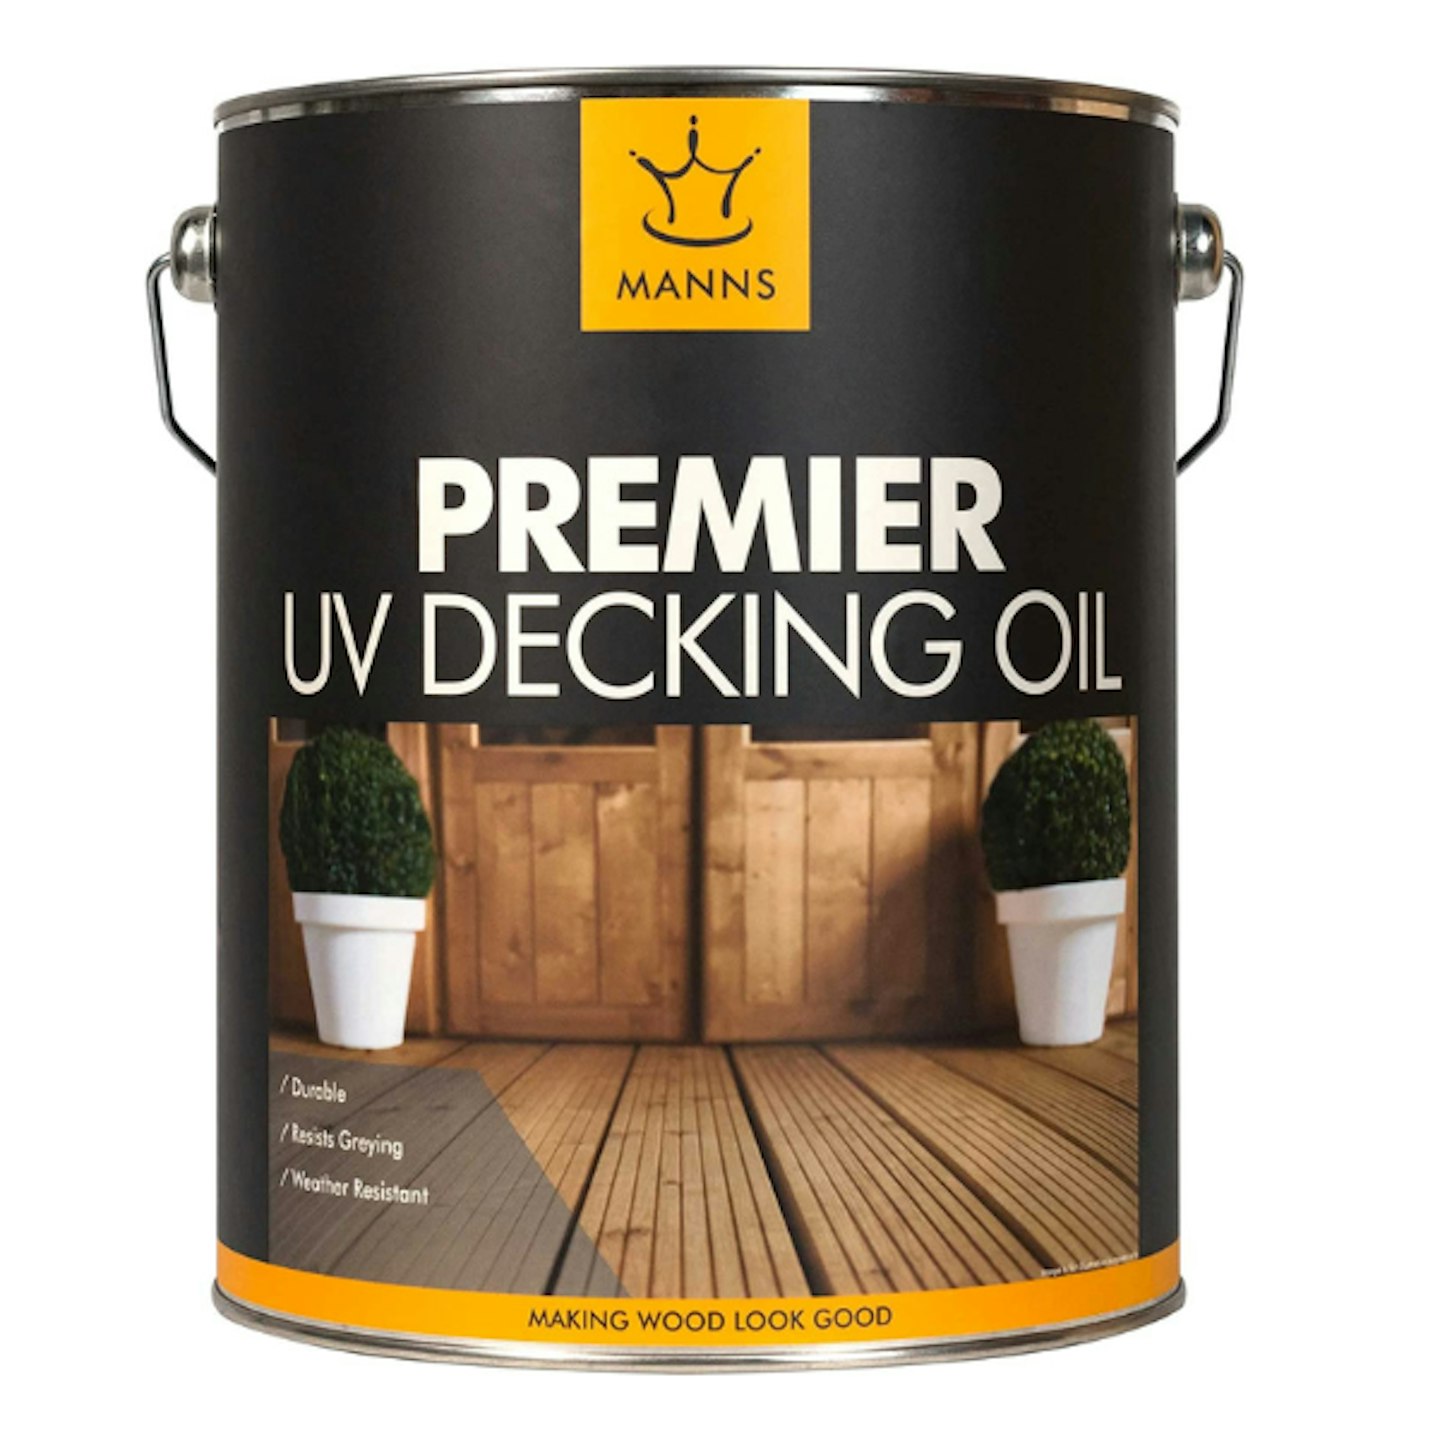 Manns Premier UV Decking Oil - 5L Clear - A Multi-Purpose Decking Oil